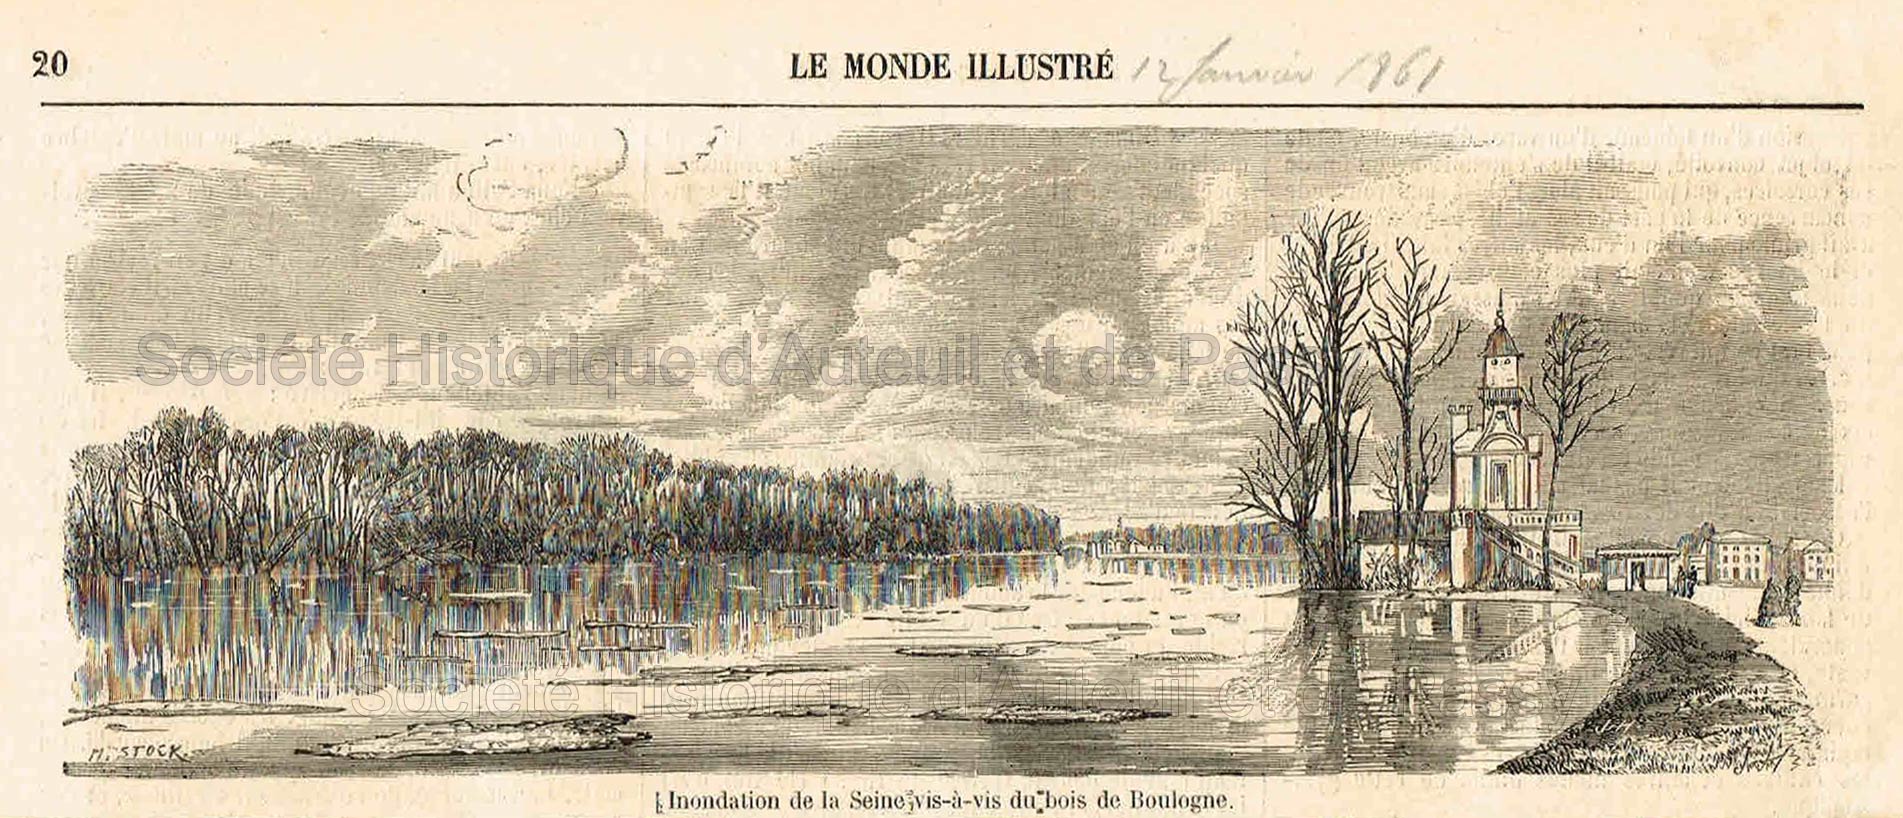 Inondation de la Seine vis-à-vis du Bois de Boulogne (Le Monde illustré - 12 janvier 1861)